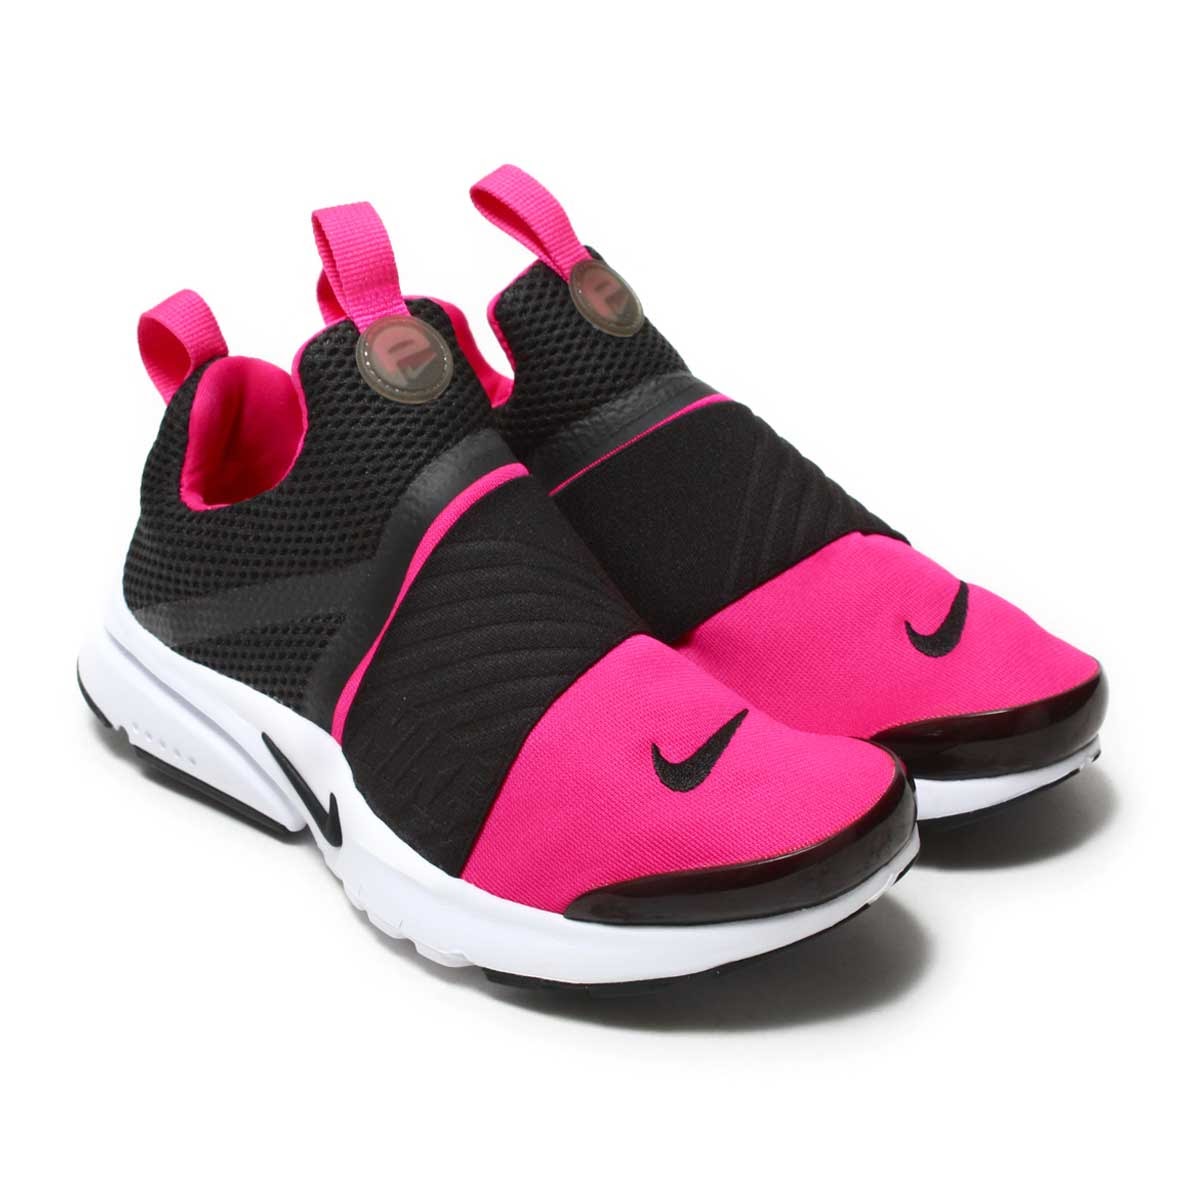 楽天市場 Nike Presto Extreme Gs ナイキ プレスト エクストリーム Gs Black Black Pink Prime White メンズ レディース スニーカー 17ho I Atmos Tokyo